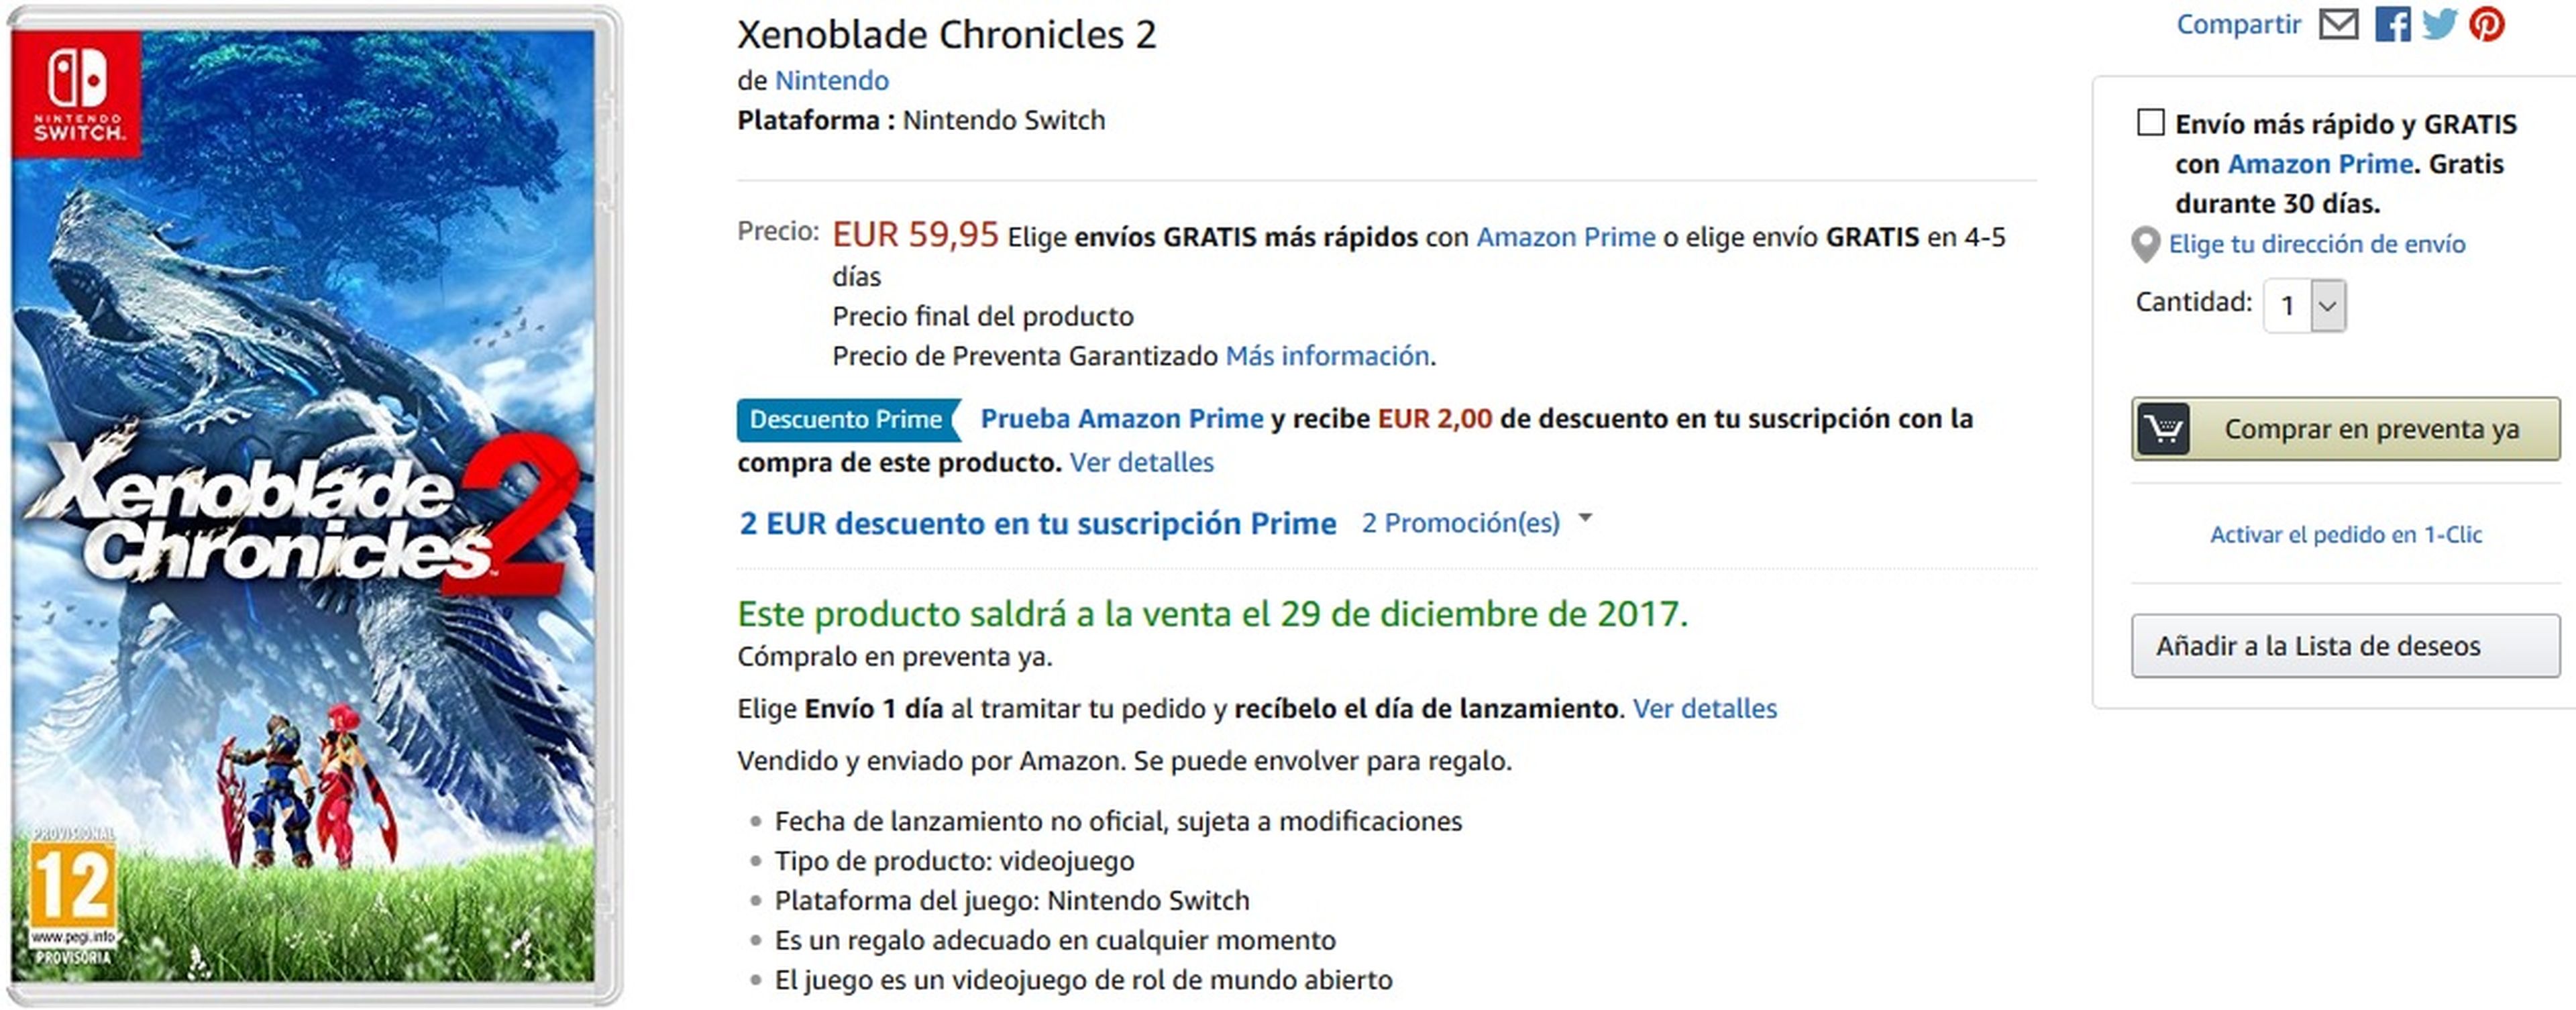 Xenoblade Chronicles 2 en Amazon